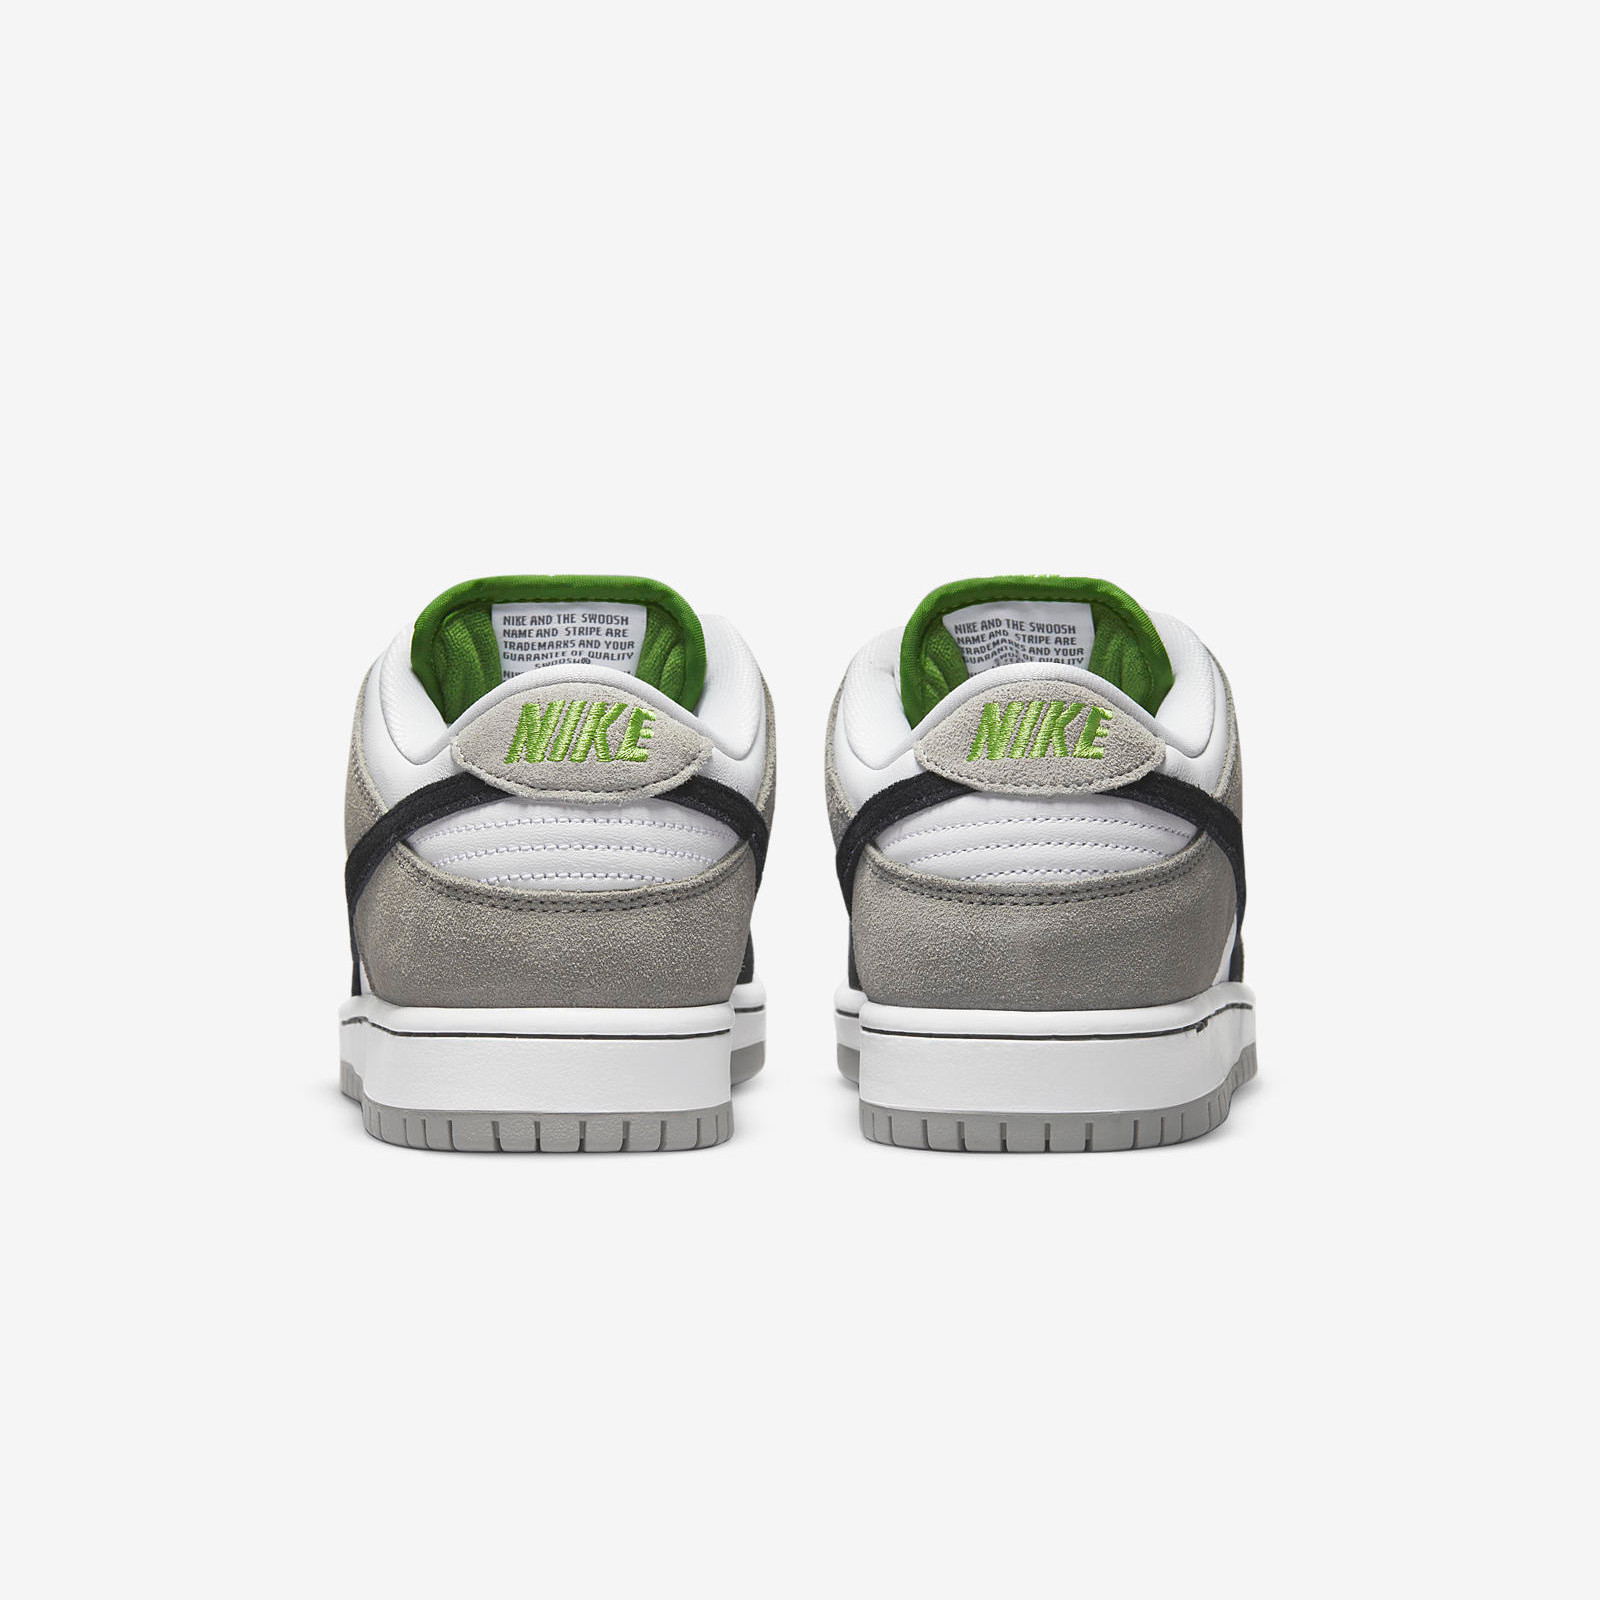 Nike SB Dunk Low
« Chlorophyll »